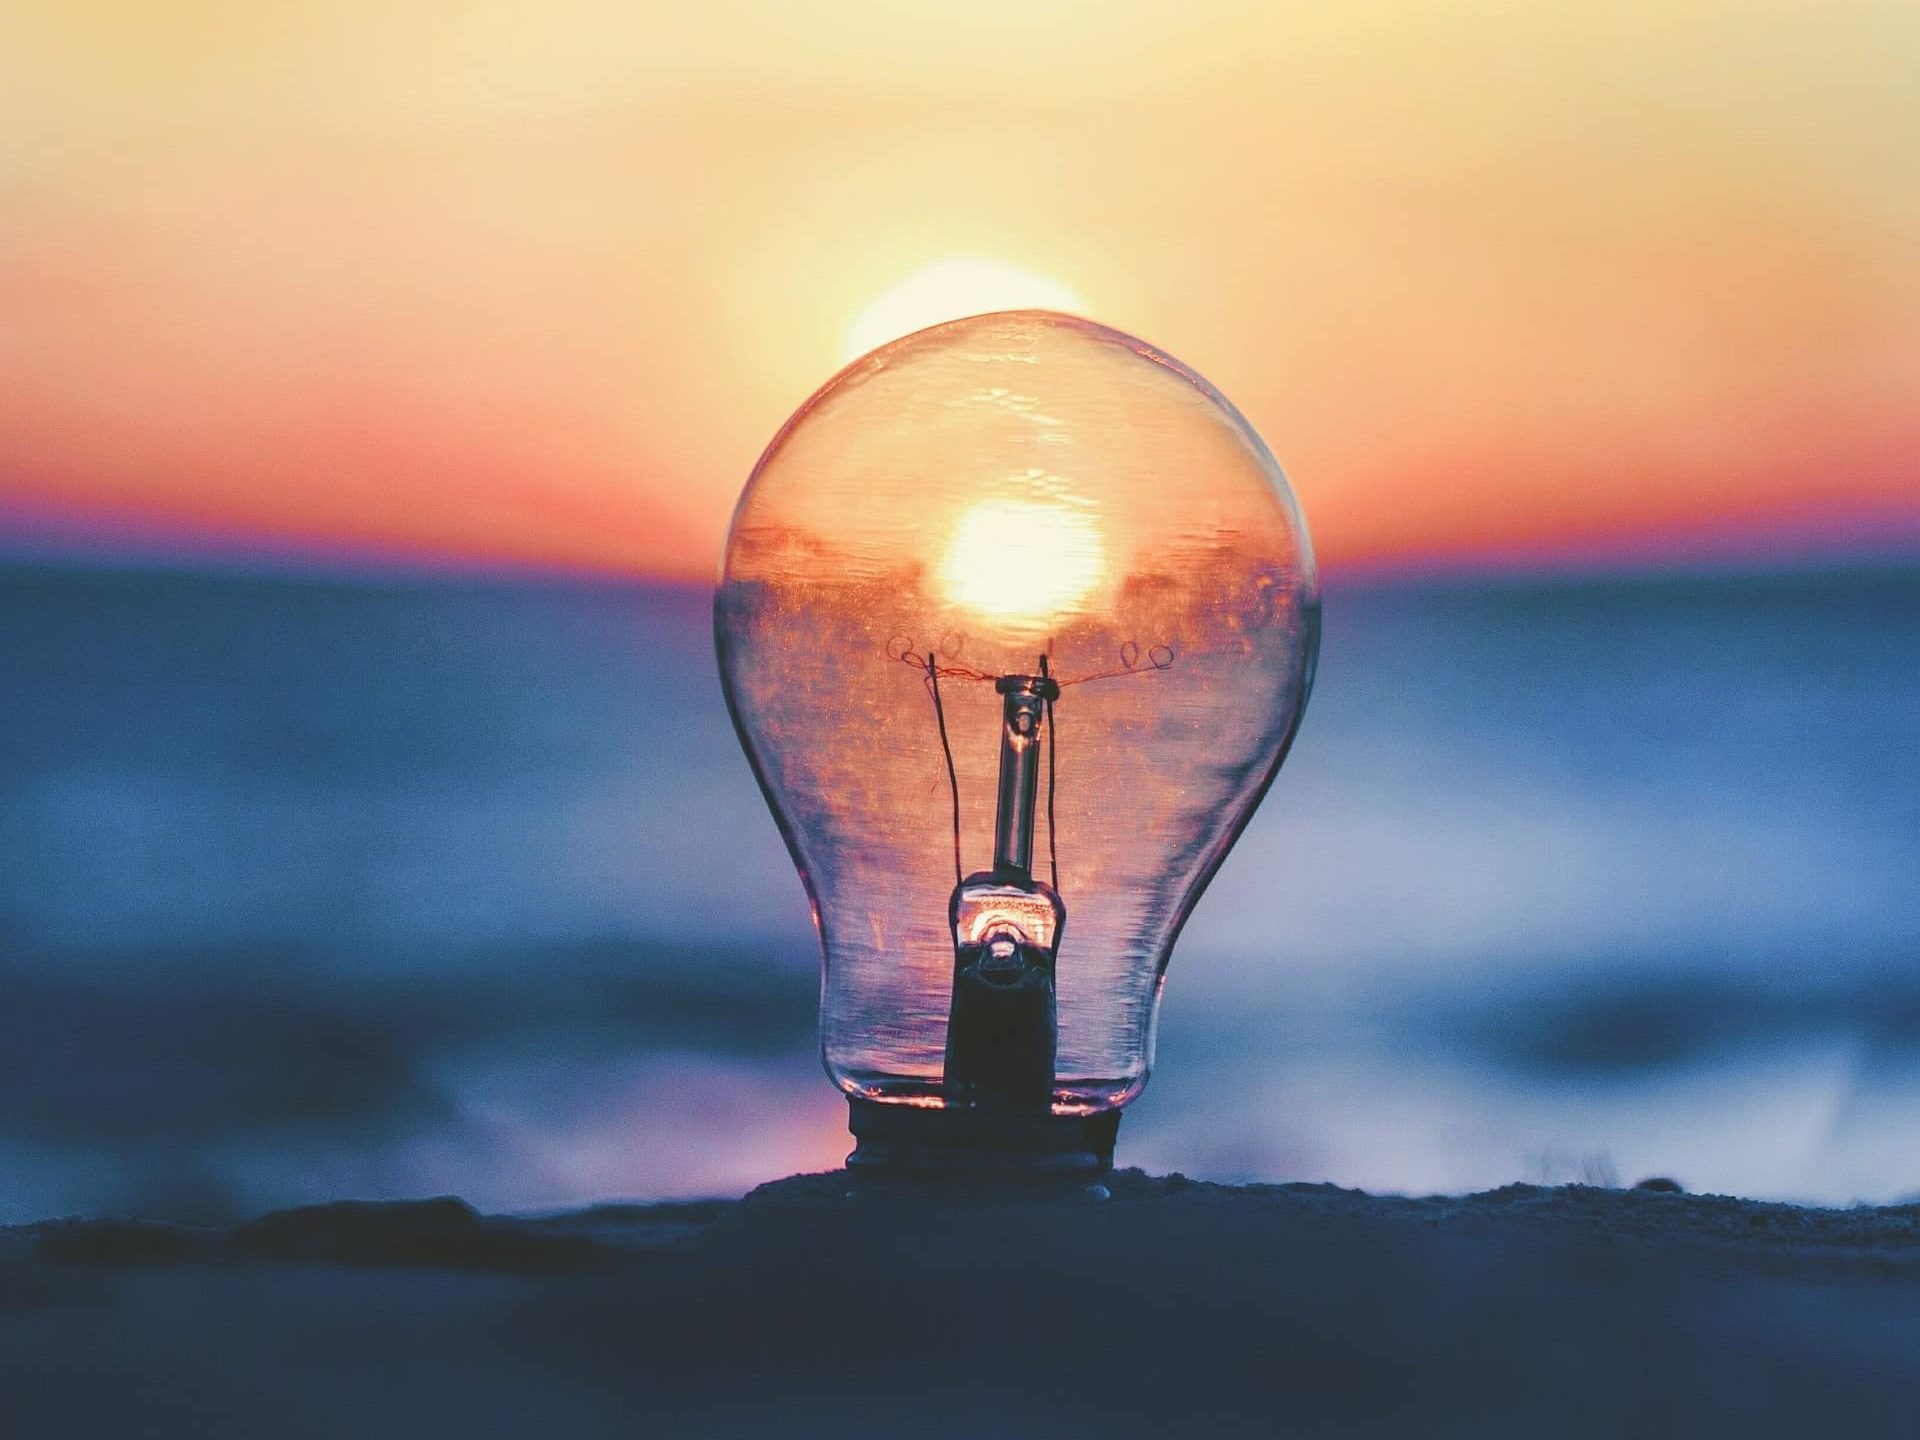 Lightbulb on a beach